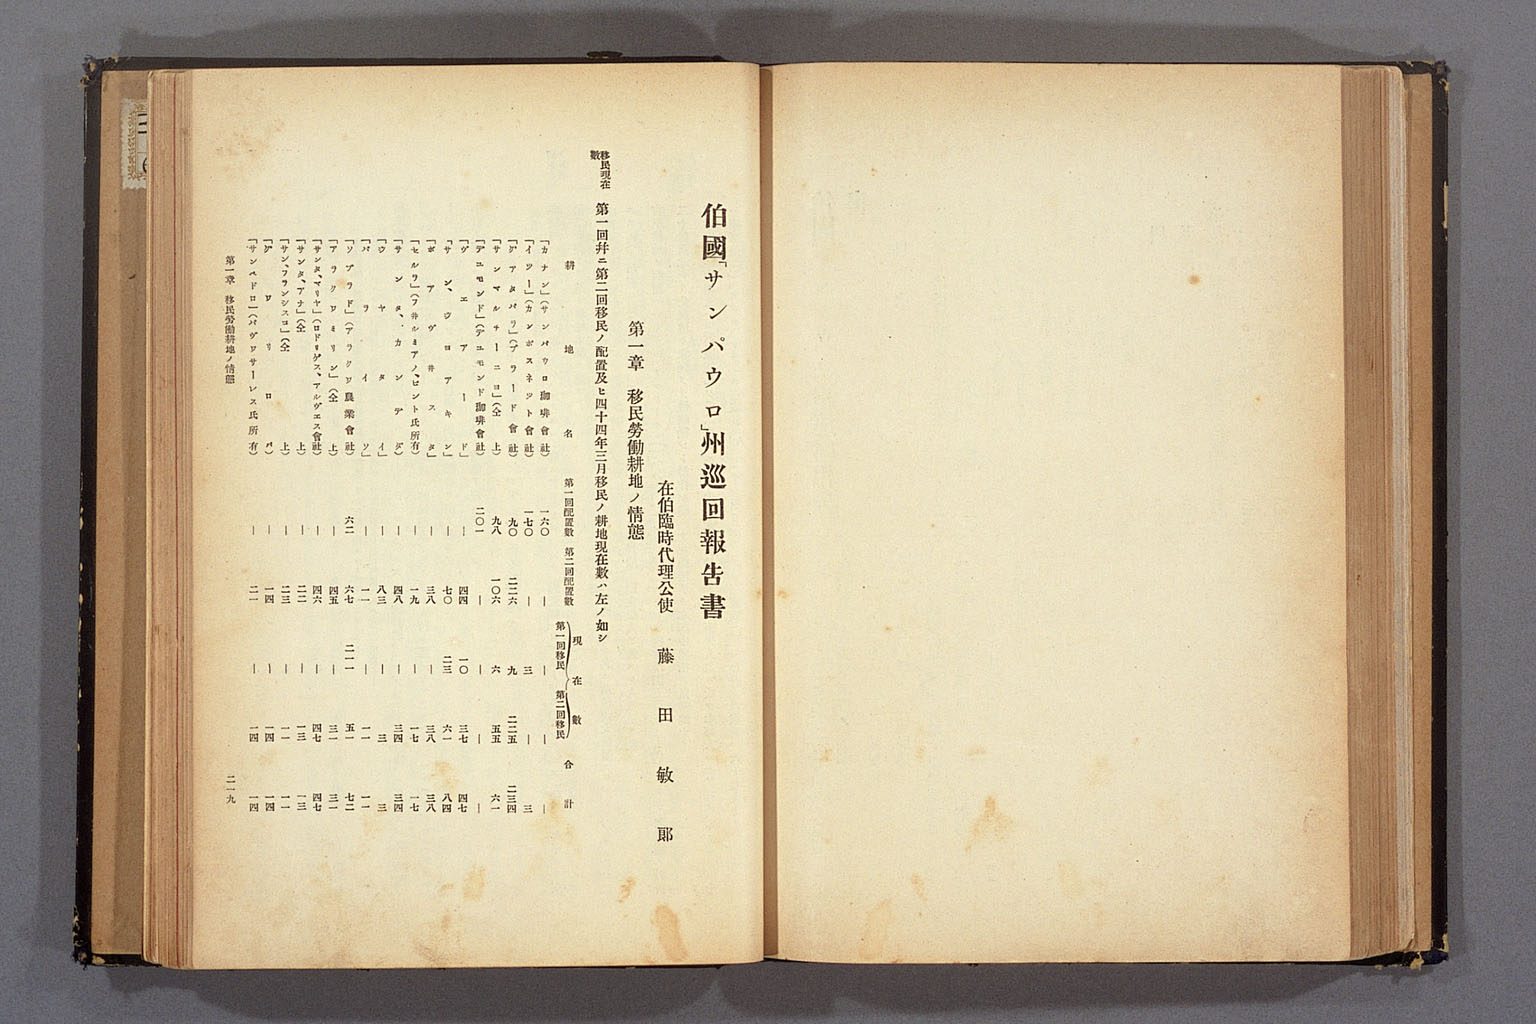 画像『1911年（明治44）4月の巡回視察報告書』